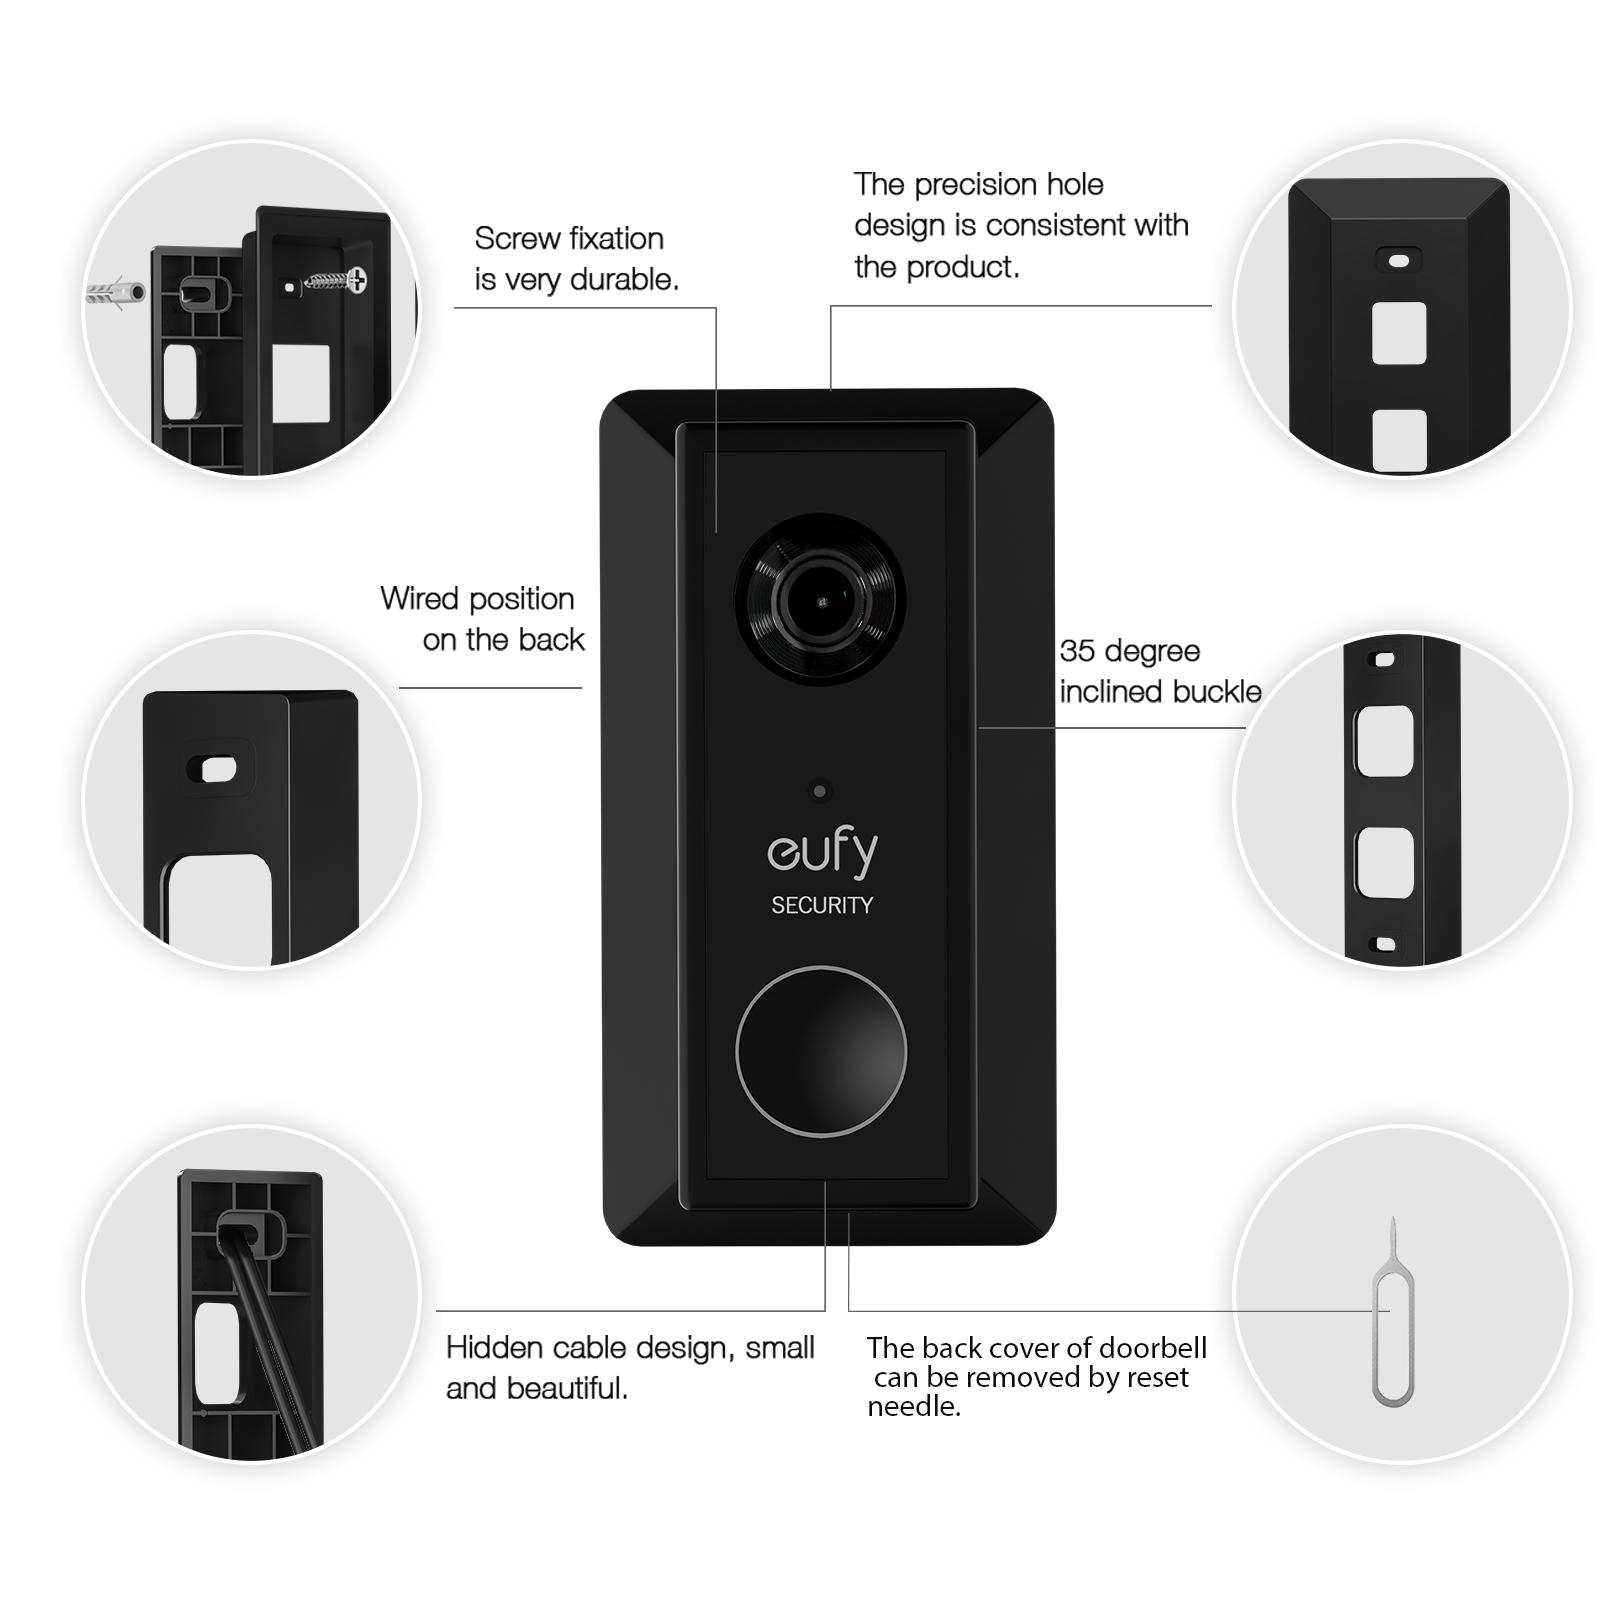 Eufy Battery Video Doorbell 2K HD Resolution (Battery -Powerd)